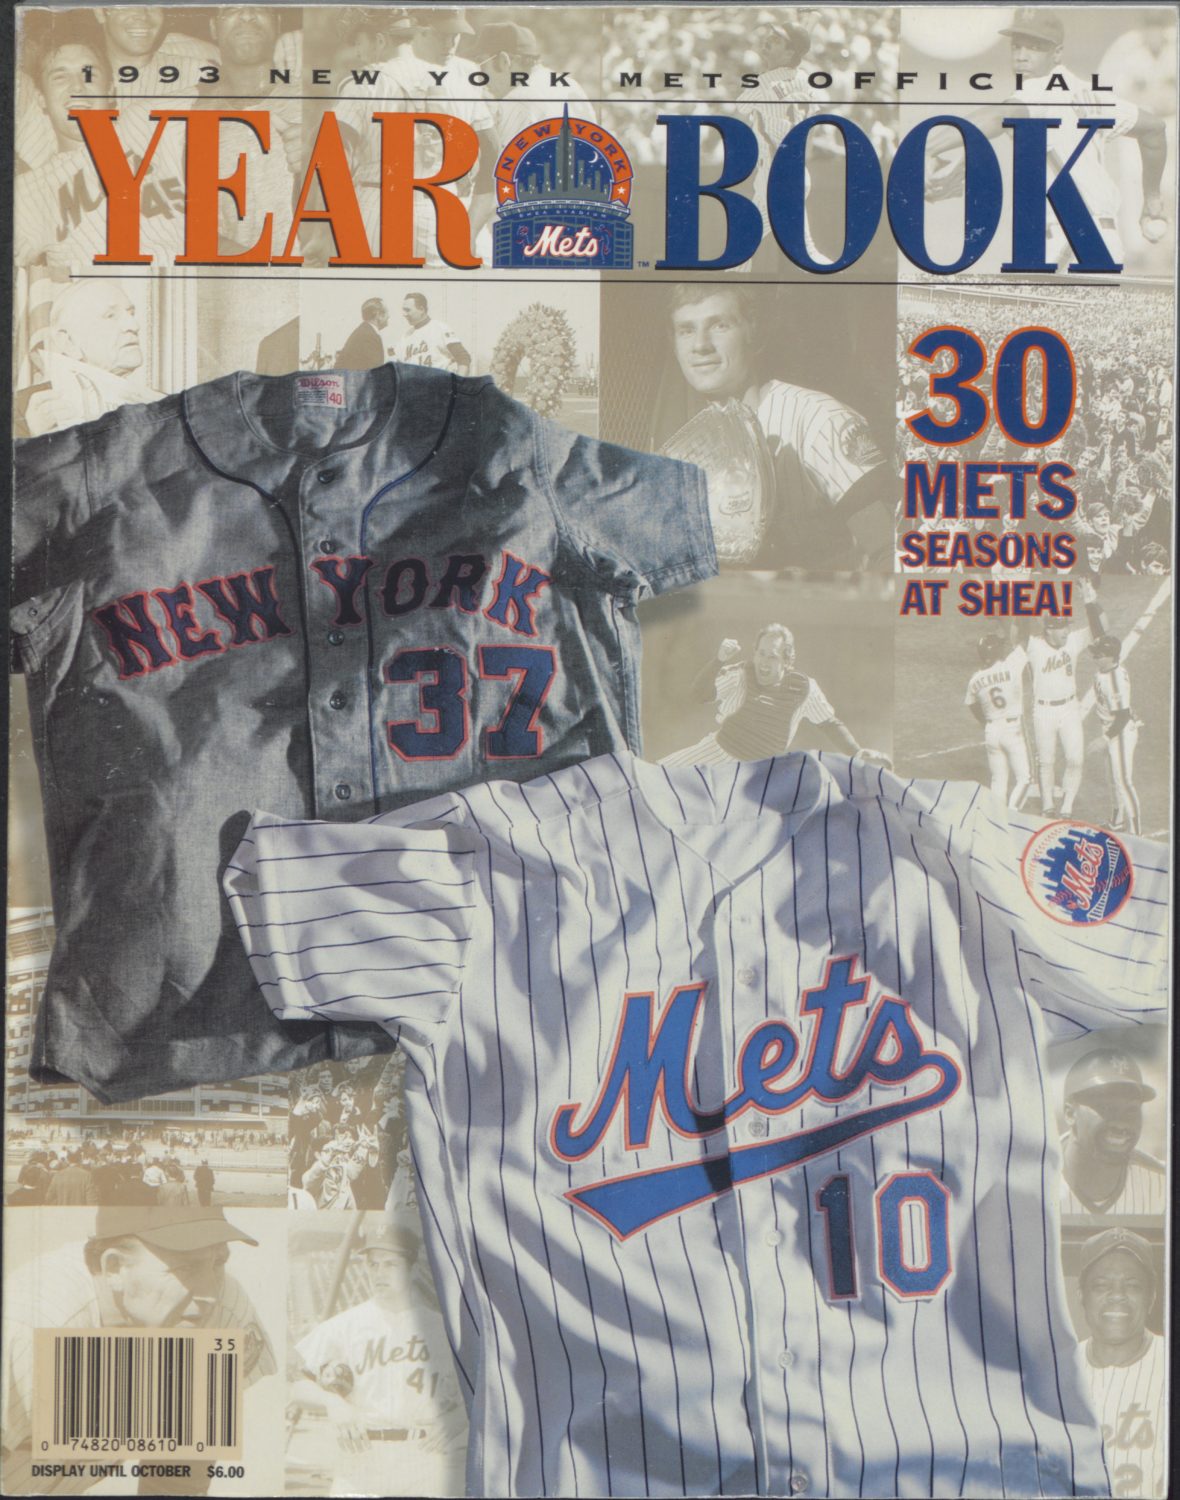 1993 Mets Yearbook: 30 Seasons at Shea